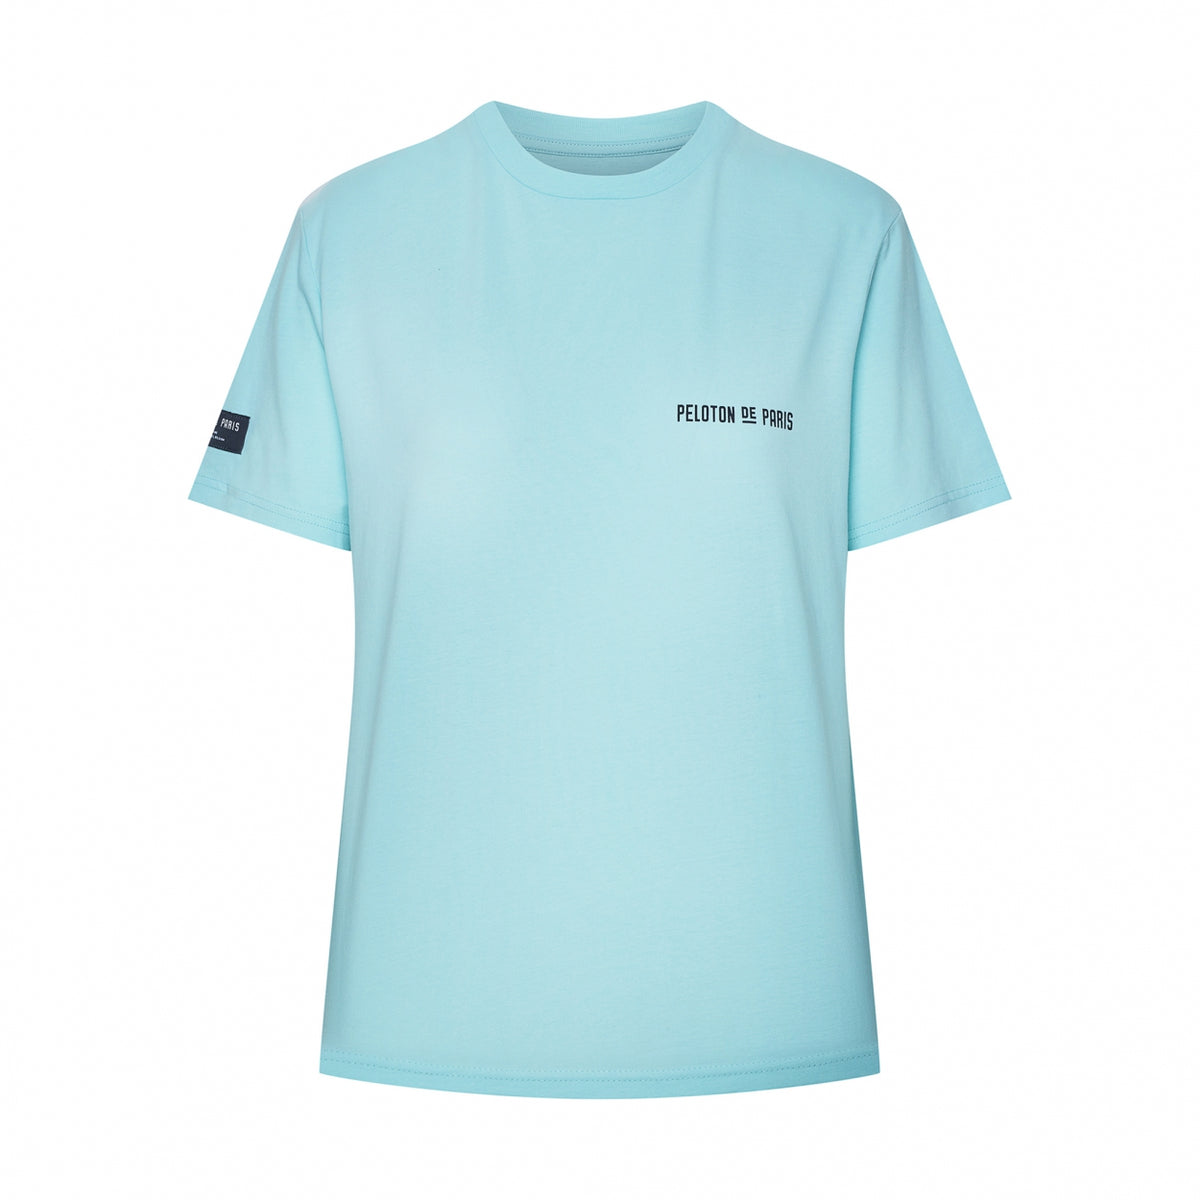 L&#39;Alpe d&#39;Huez T-Shirt | Celeste